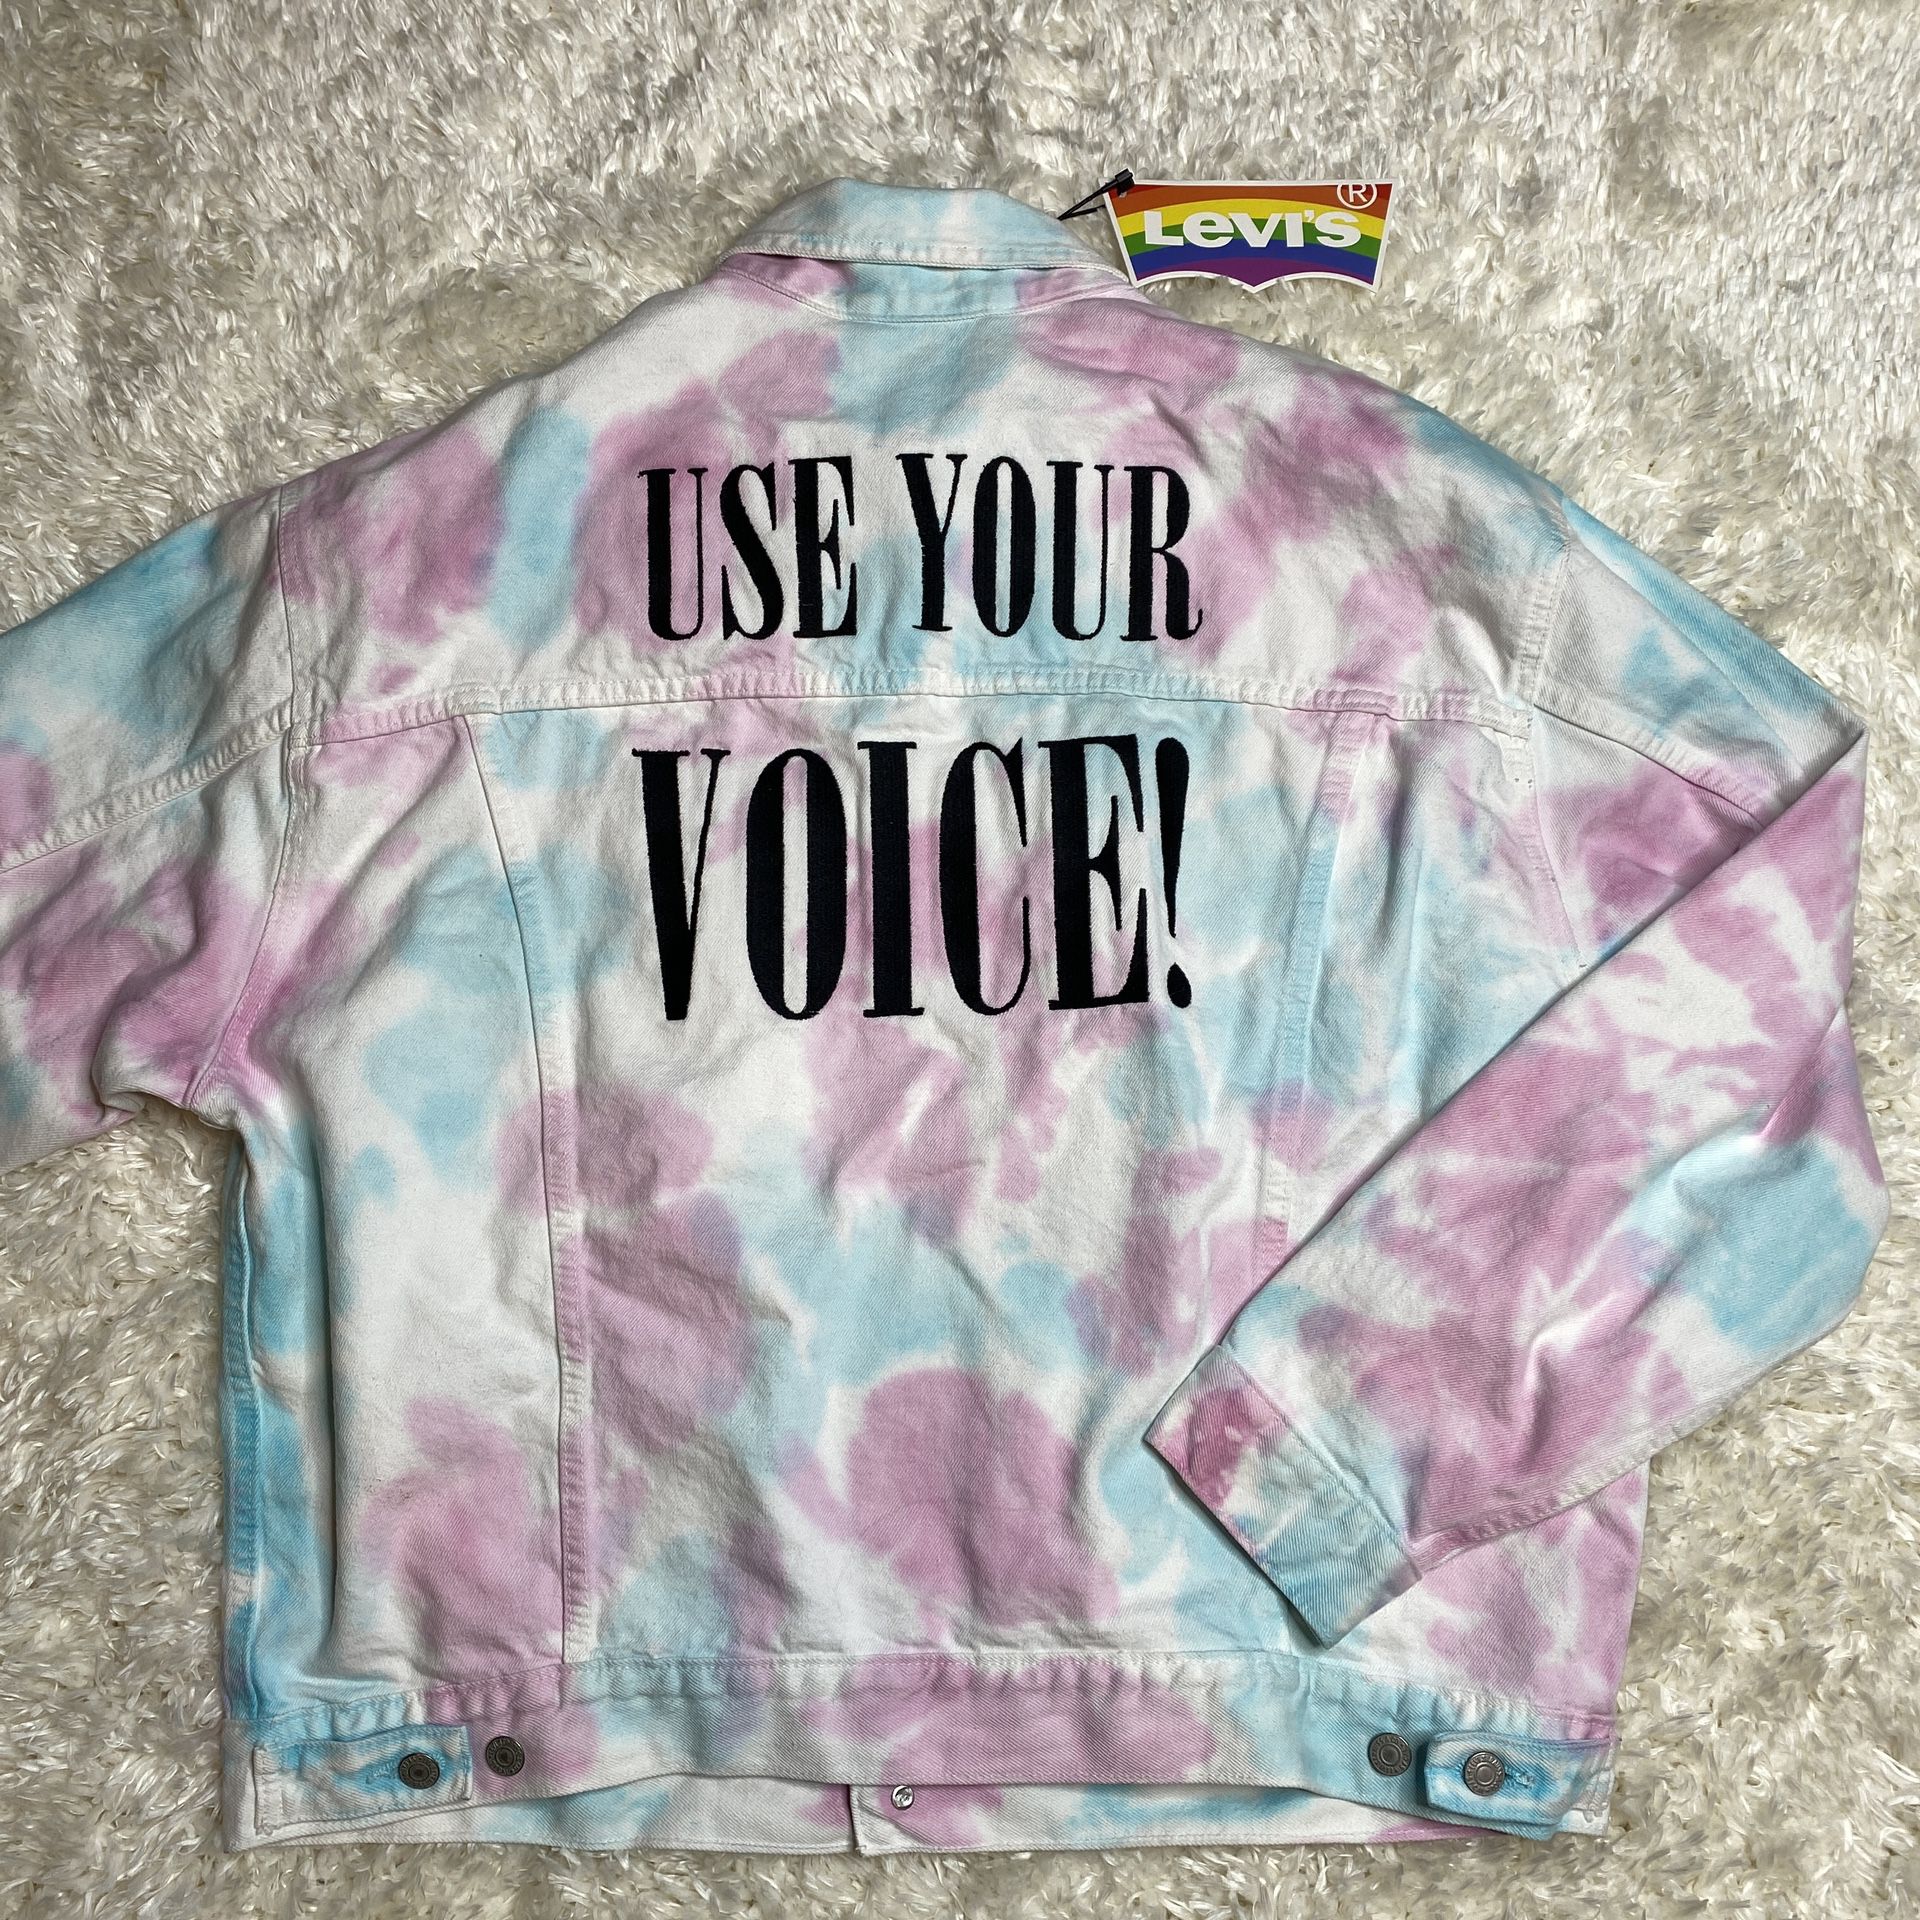 NEW Levi’s Pride Use Your Voice Tie Dye Trucker Denim Jacket Multicolor Size Men’s Large 